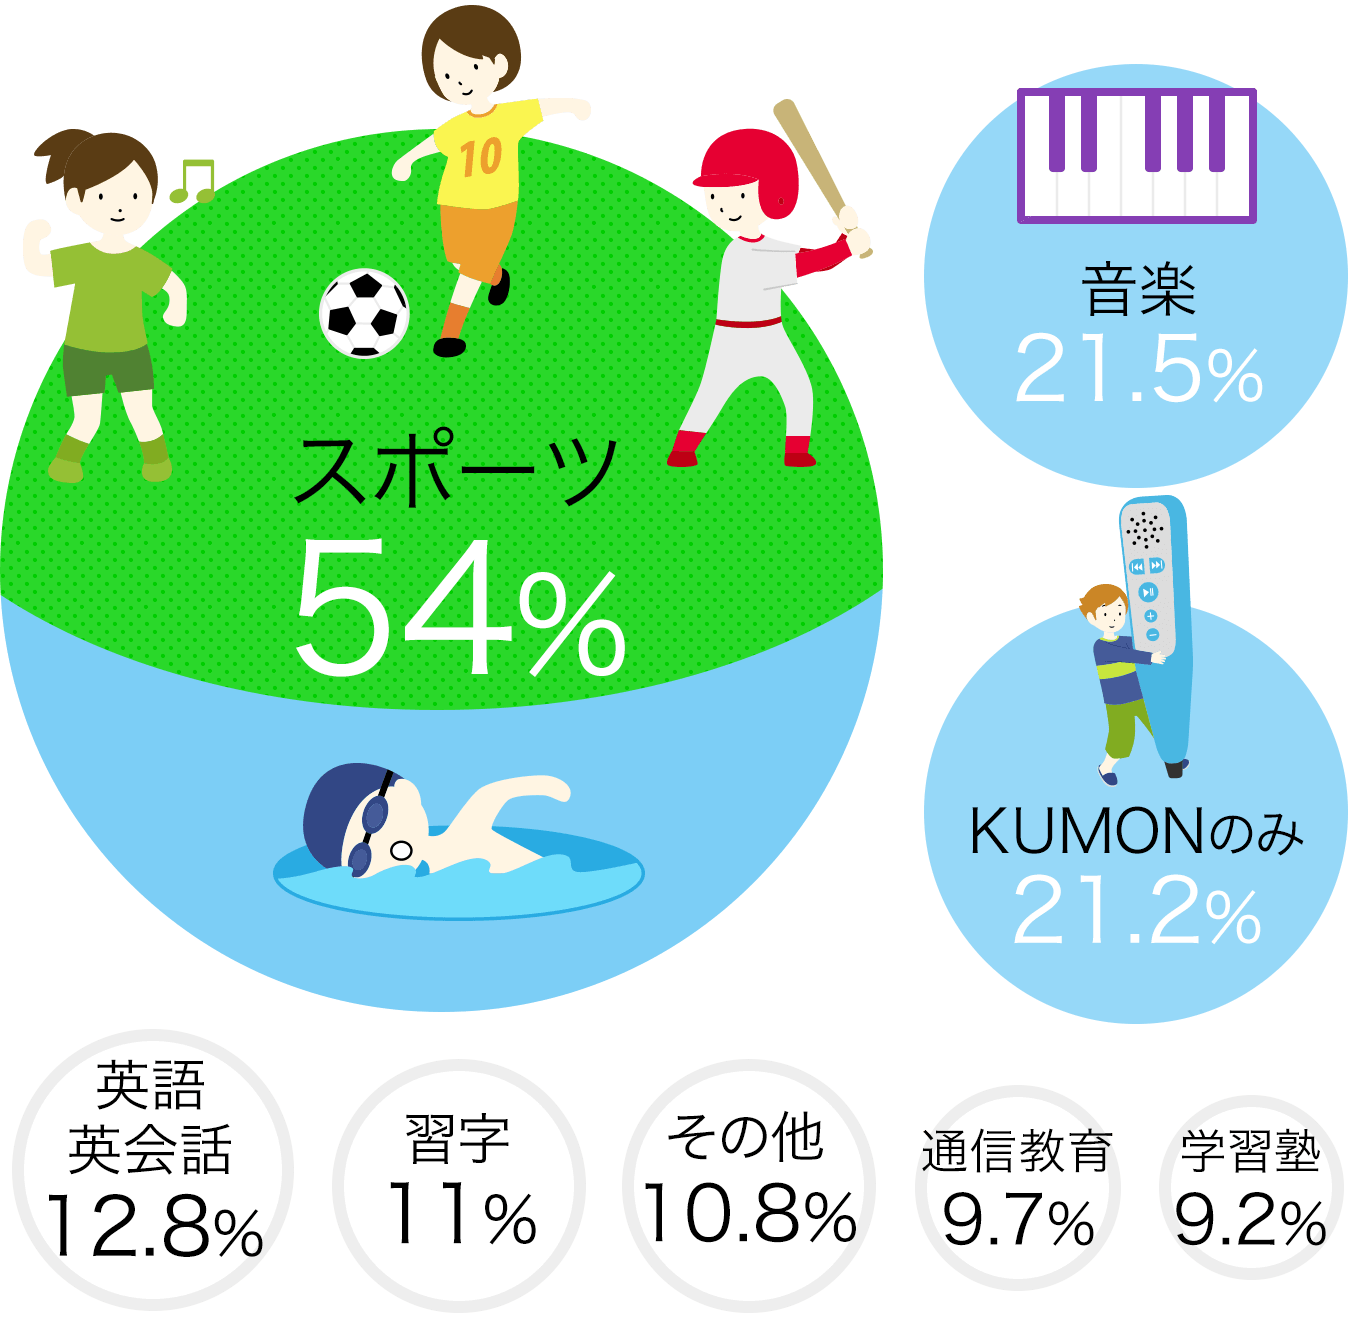 スポーツ54% 音楽21.5% KUMONのみ21.2% その他13.6% 英語（英会話教室など）12.8% 通信教育9.7% 学習塾9.2%